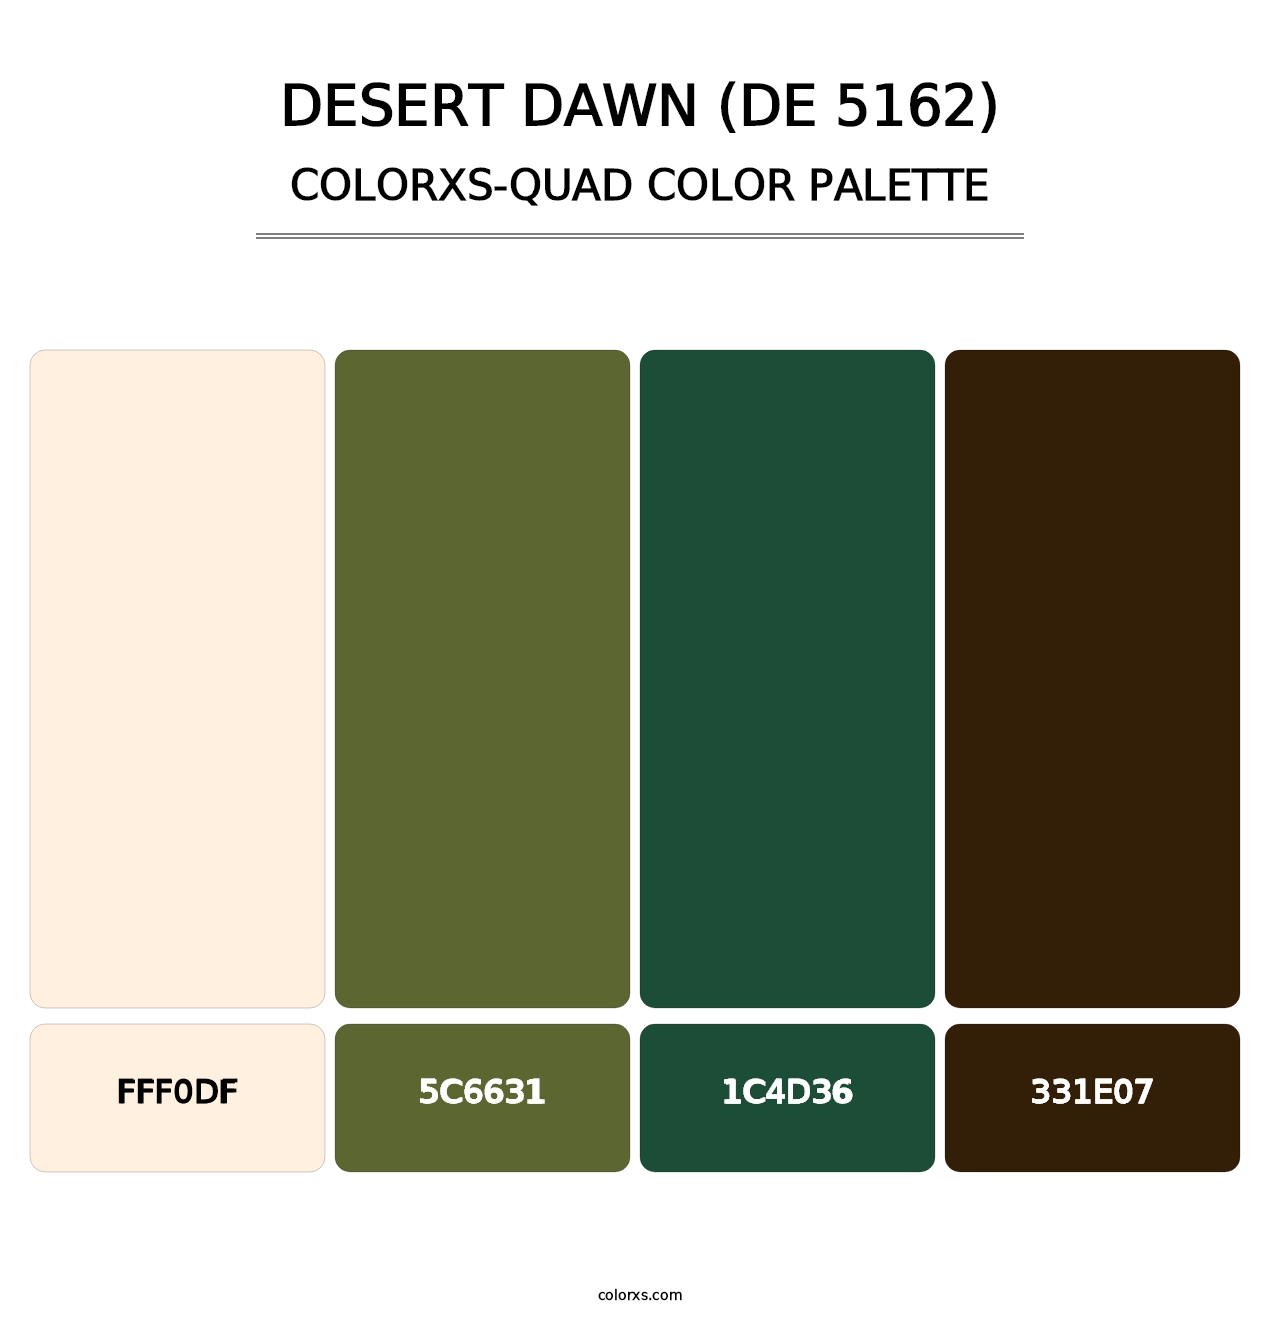 Desert Dawn (DE 5162) - Colorxs Quad Palette